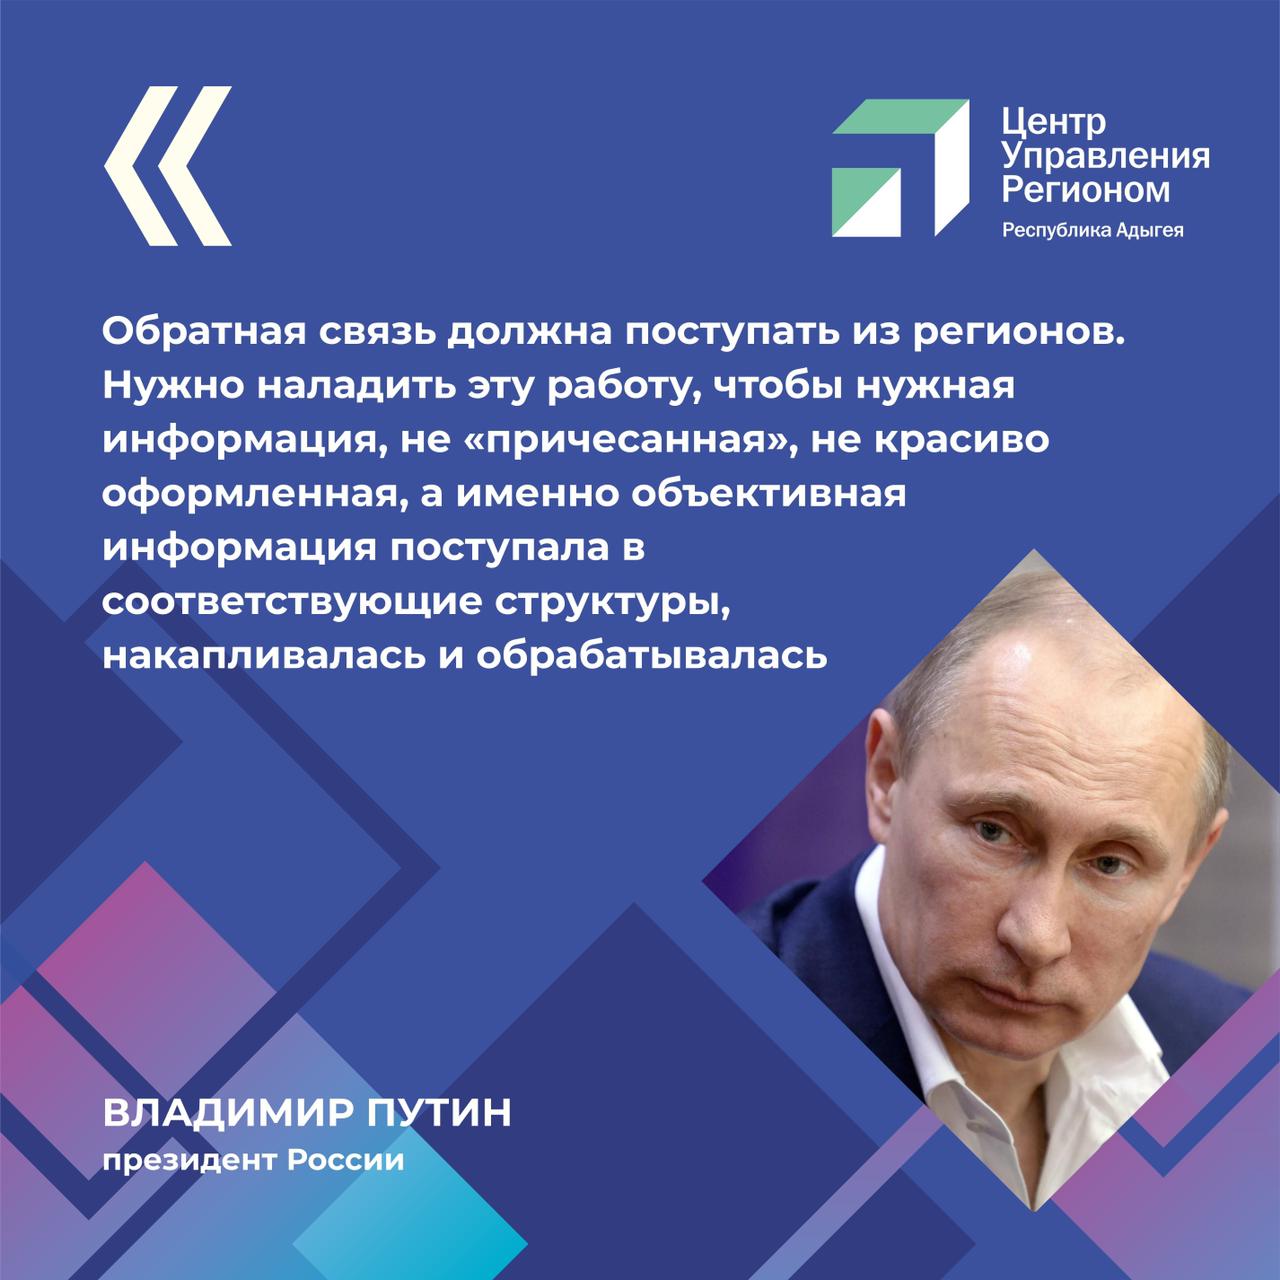 Владимир Путин заявил о важности обратной связи с населением